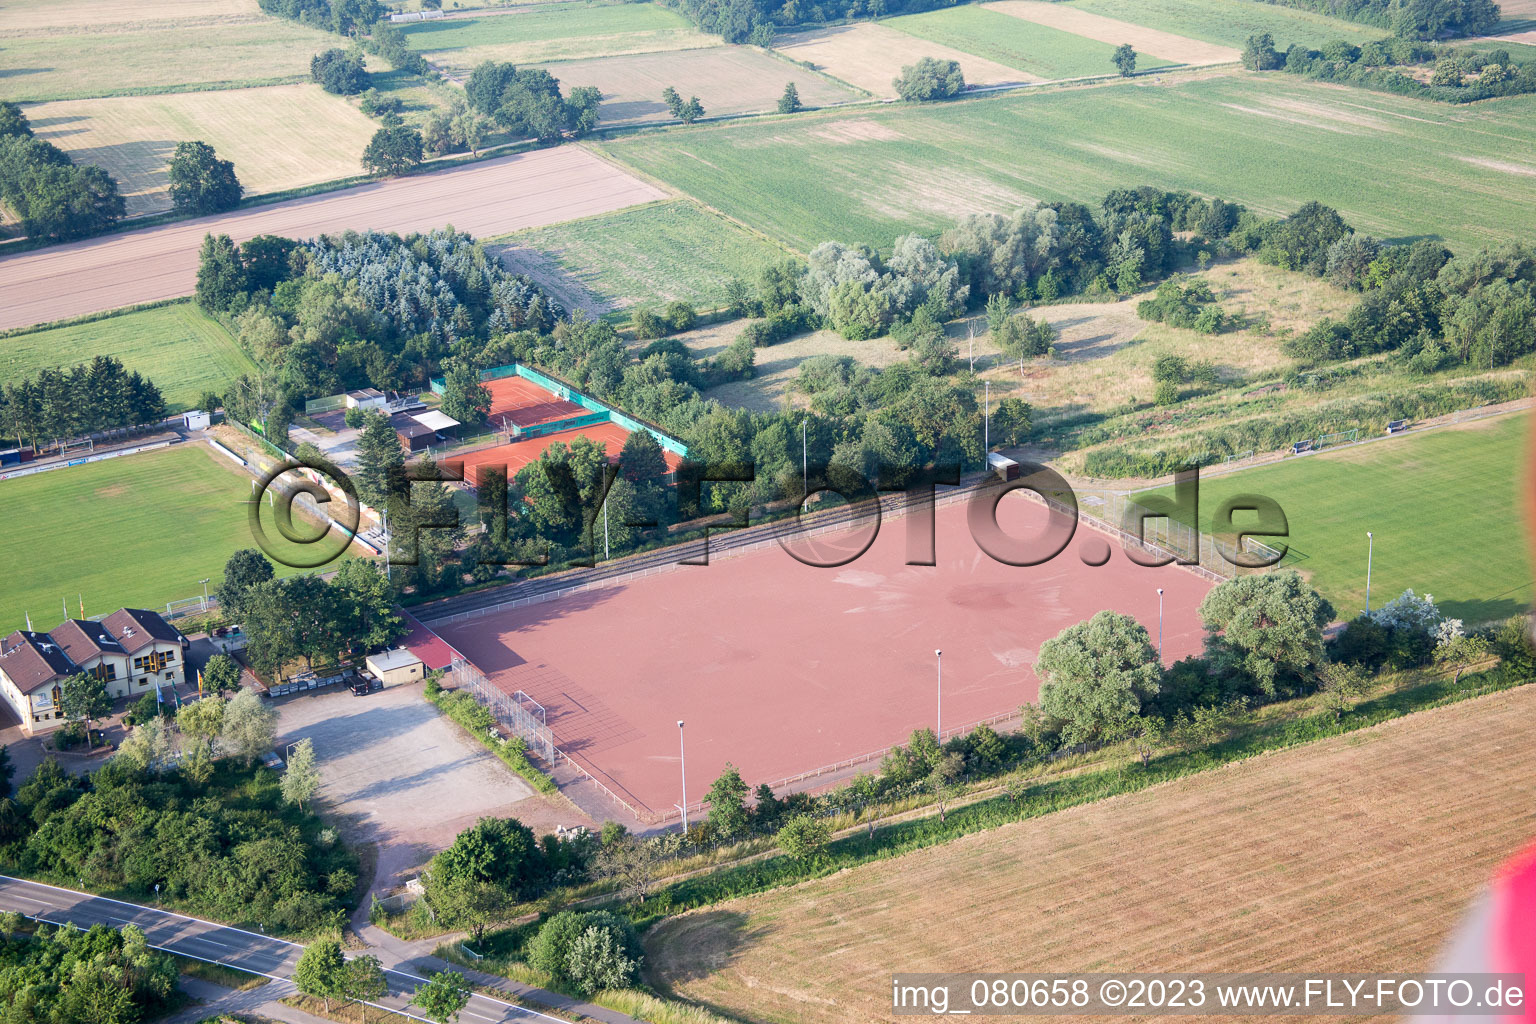 Zeiskam im Bundesland Rheinland-Pfalz, Deutschland aus der Drohnenperspektive